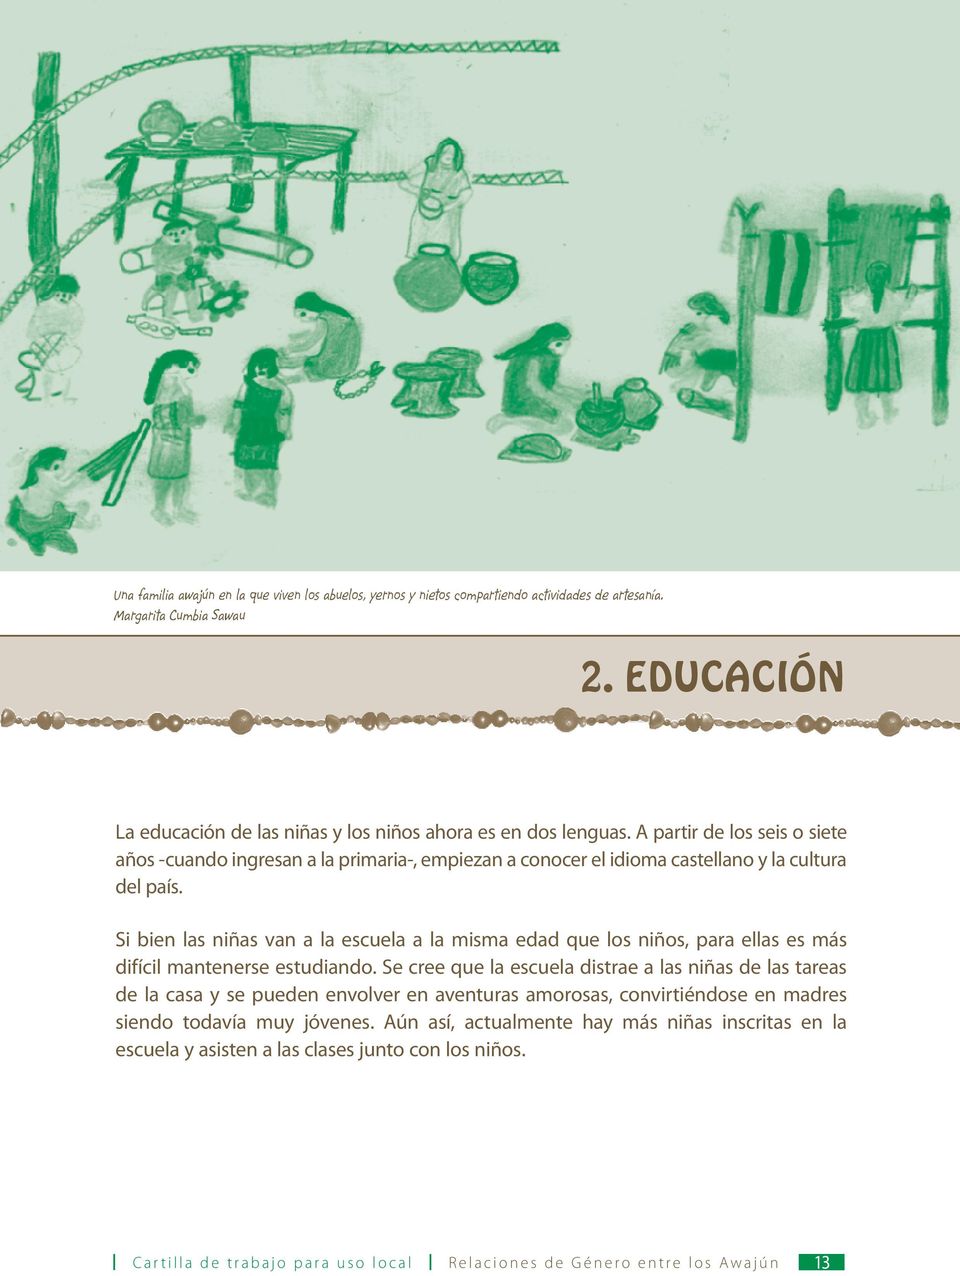 A partir de los seis o siete años -cuando ingresan a la primaria-, empiezan a conocer el idioma castellano y la cultura del país.